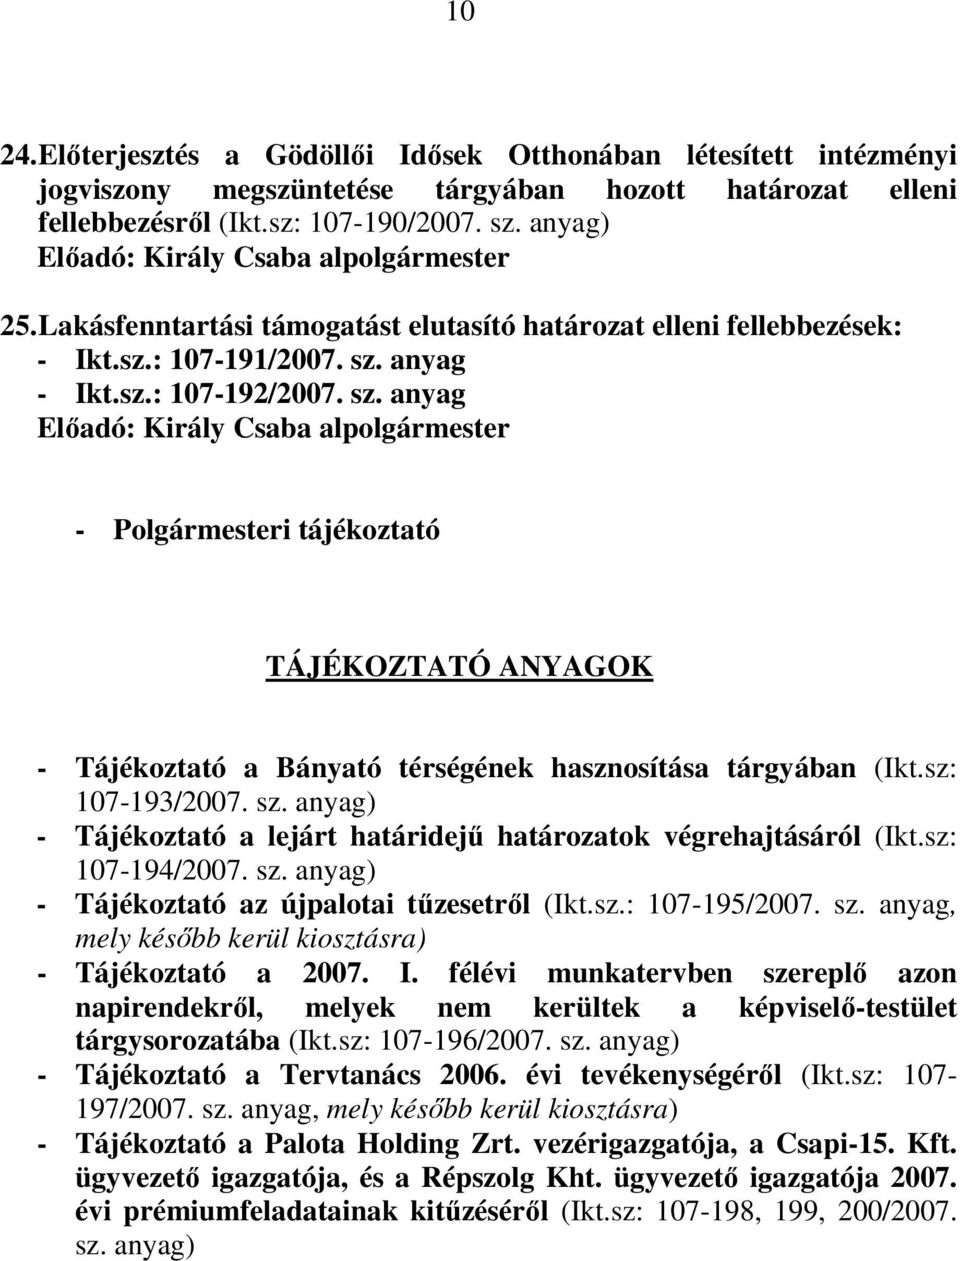 anyag - Ikt.sz.: 107-192/2007. sz. anyag Elıadó: Király Csaba alpolgármester - Polgármesteri tájékoztató TÁJÉKOZTATÓ ANYAGOK - Tájékoztató a Bányató térségének hasznosítása tárgyában (Ikt.